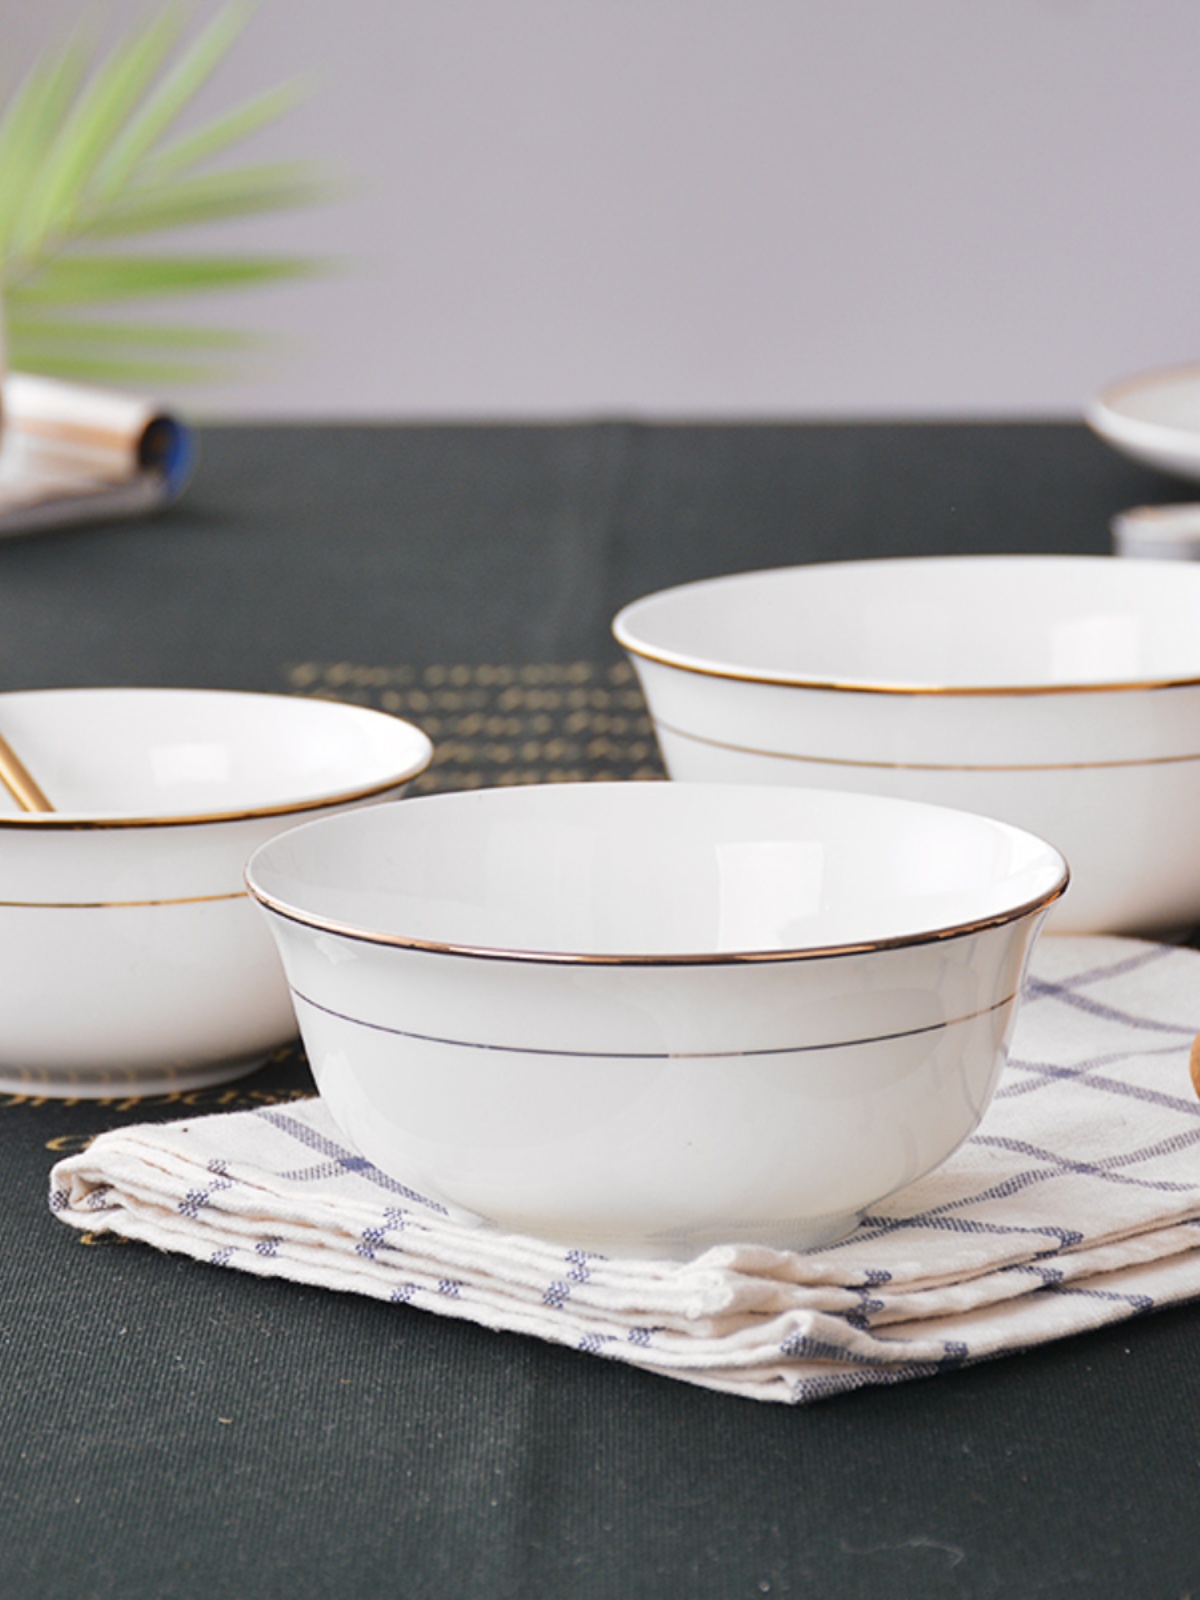 金边碗4.5英寸骨瓷碗米饭碗家用4个装陶瓷碗喇叭碗白瓷碗6寸面碗